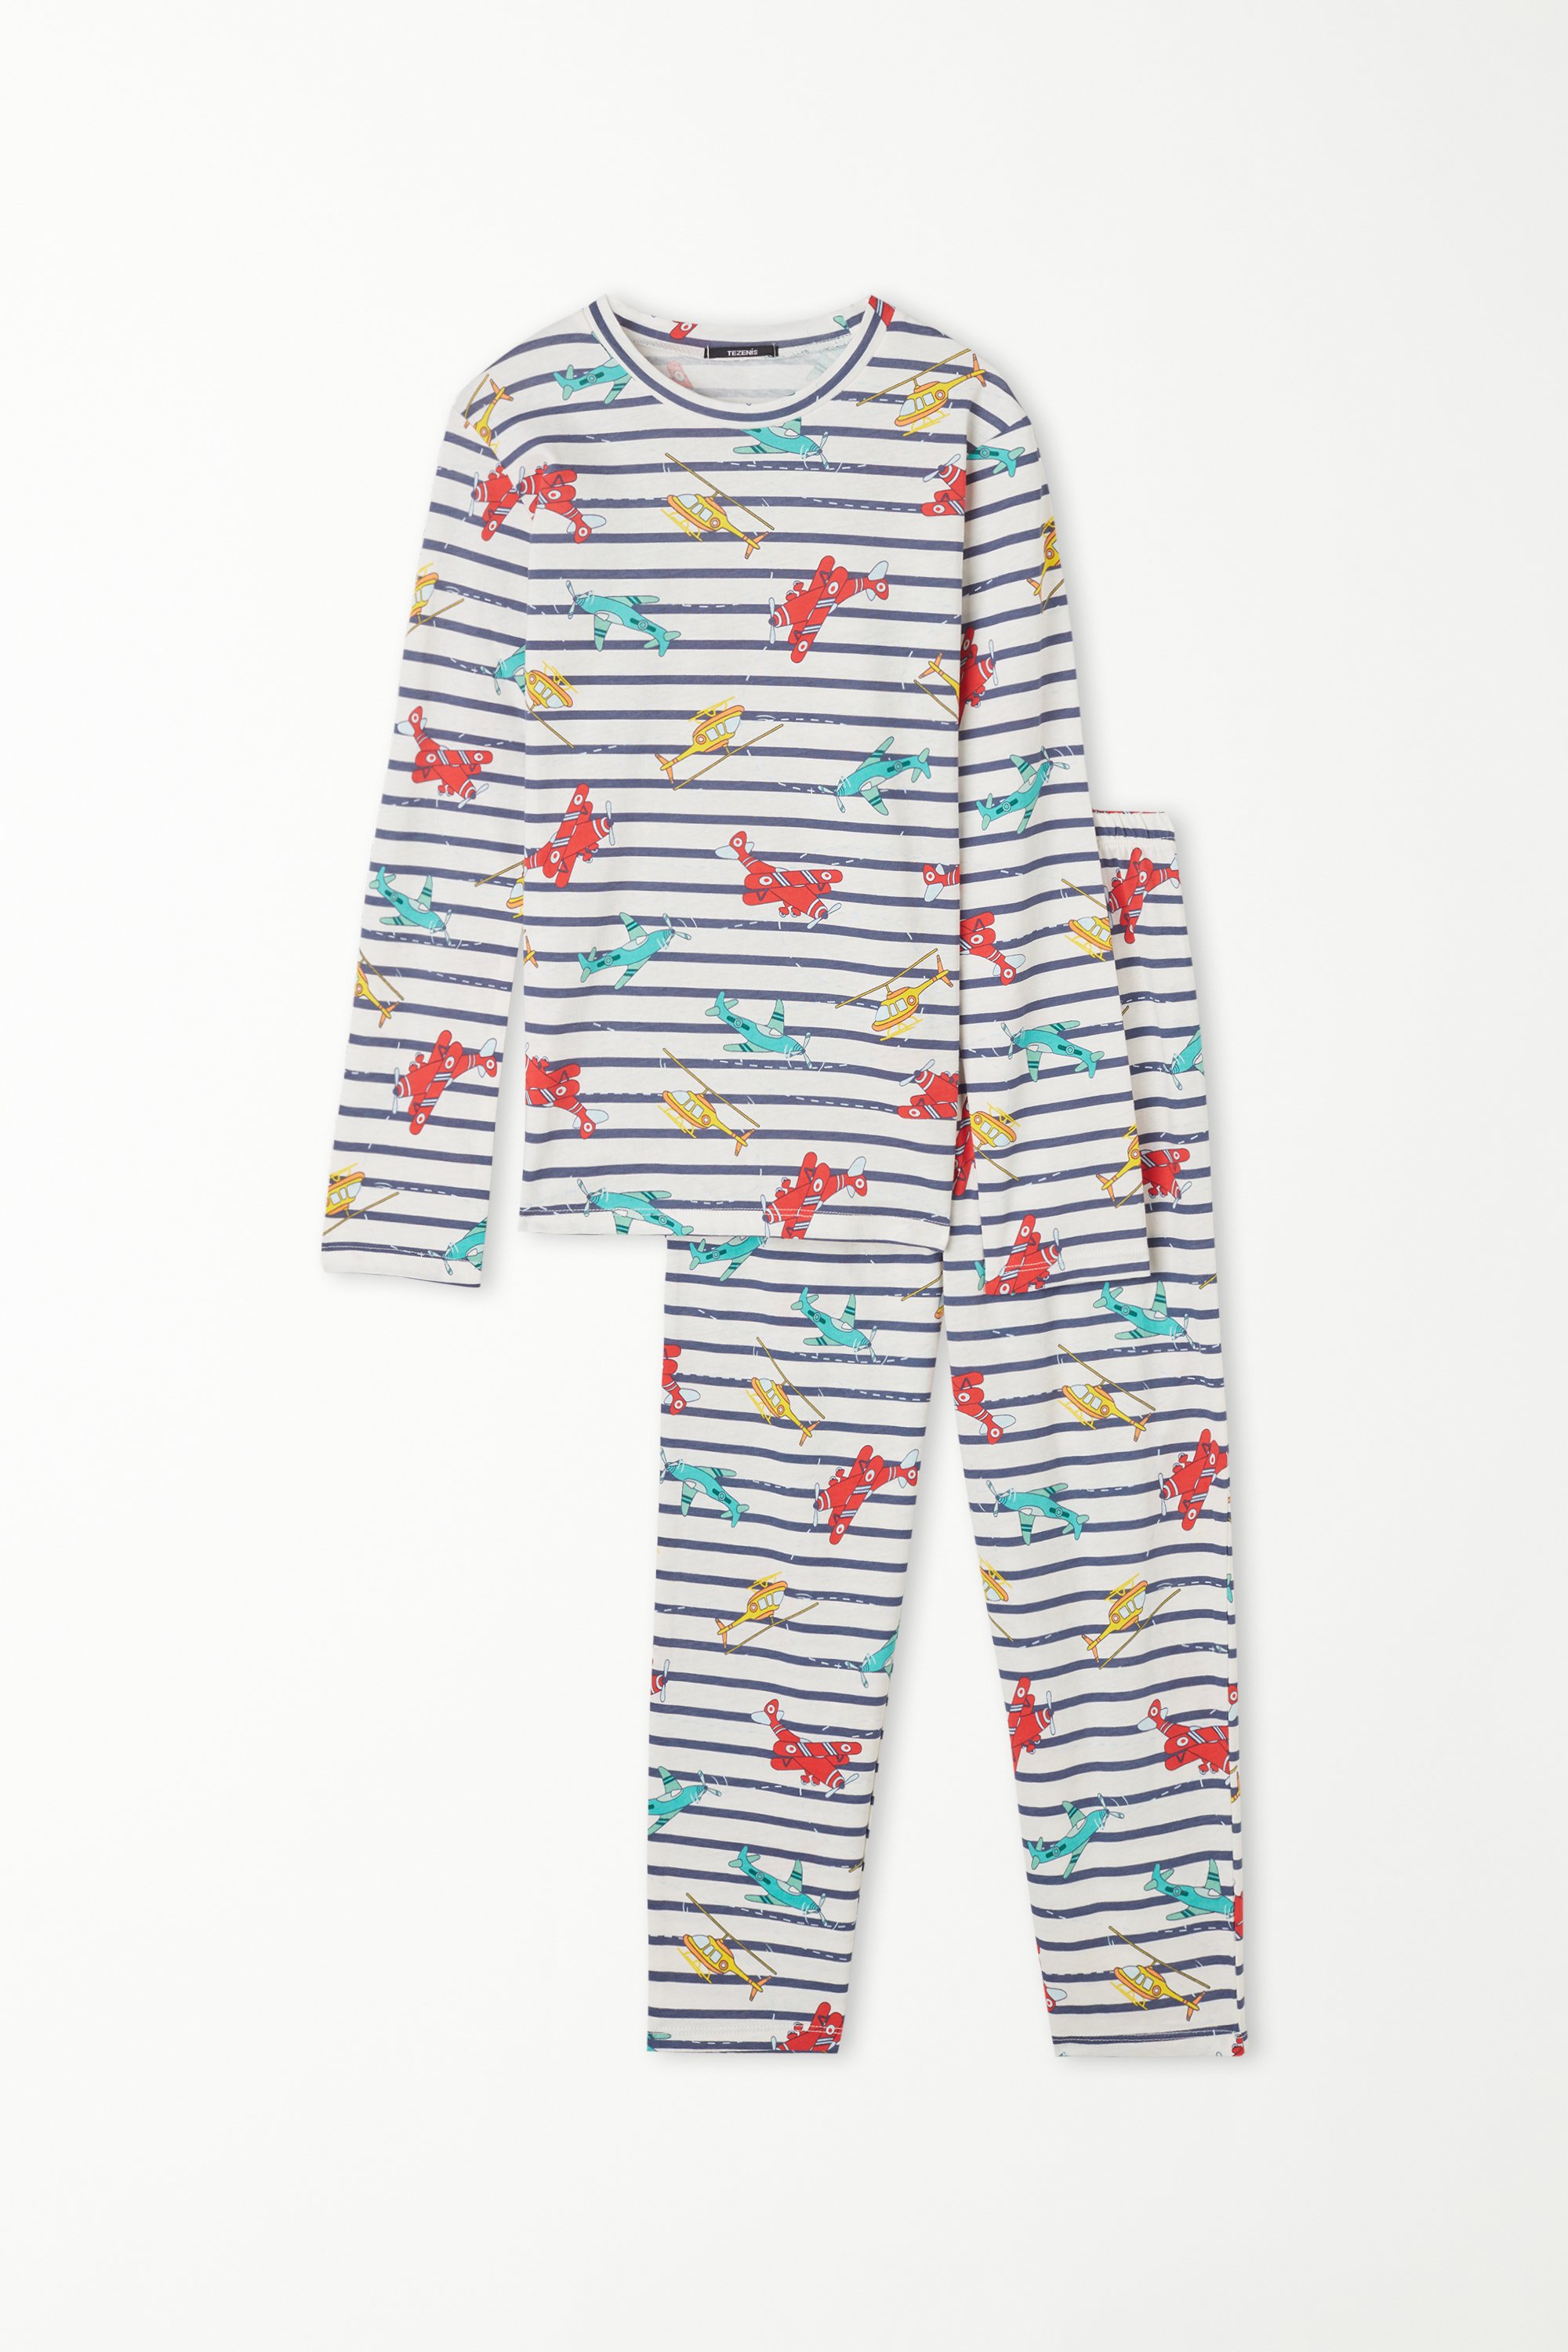 Dlouhé Bavlněné Pyžamo s Pruhovaným Potiskem Letadel